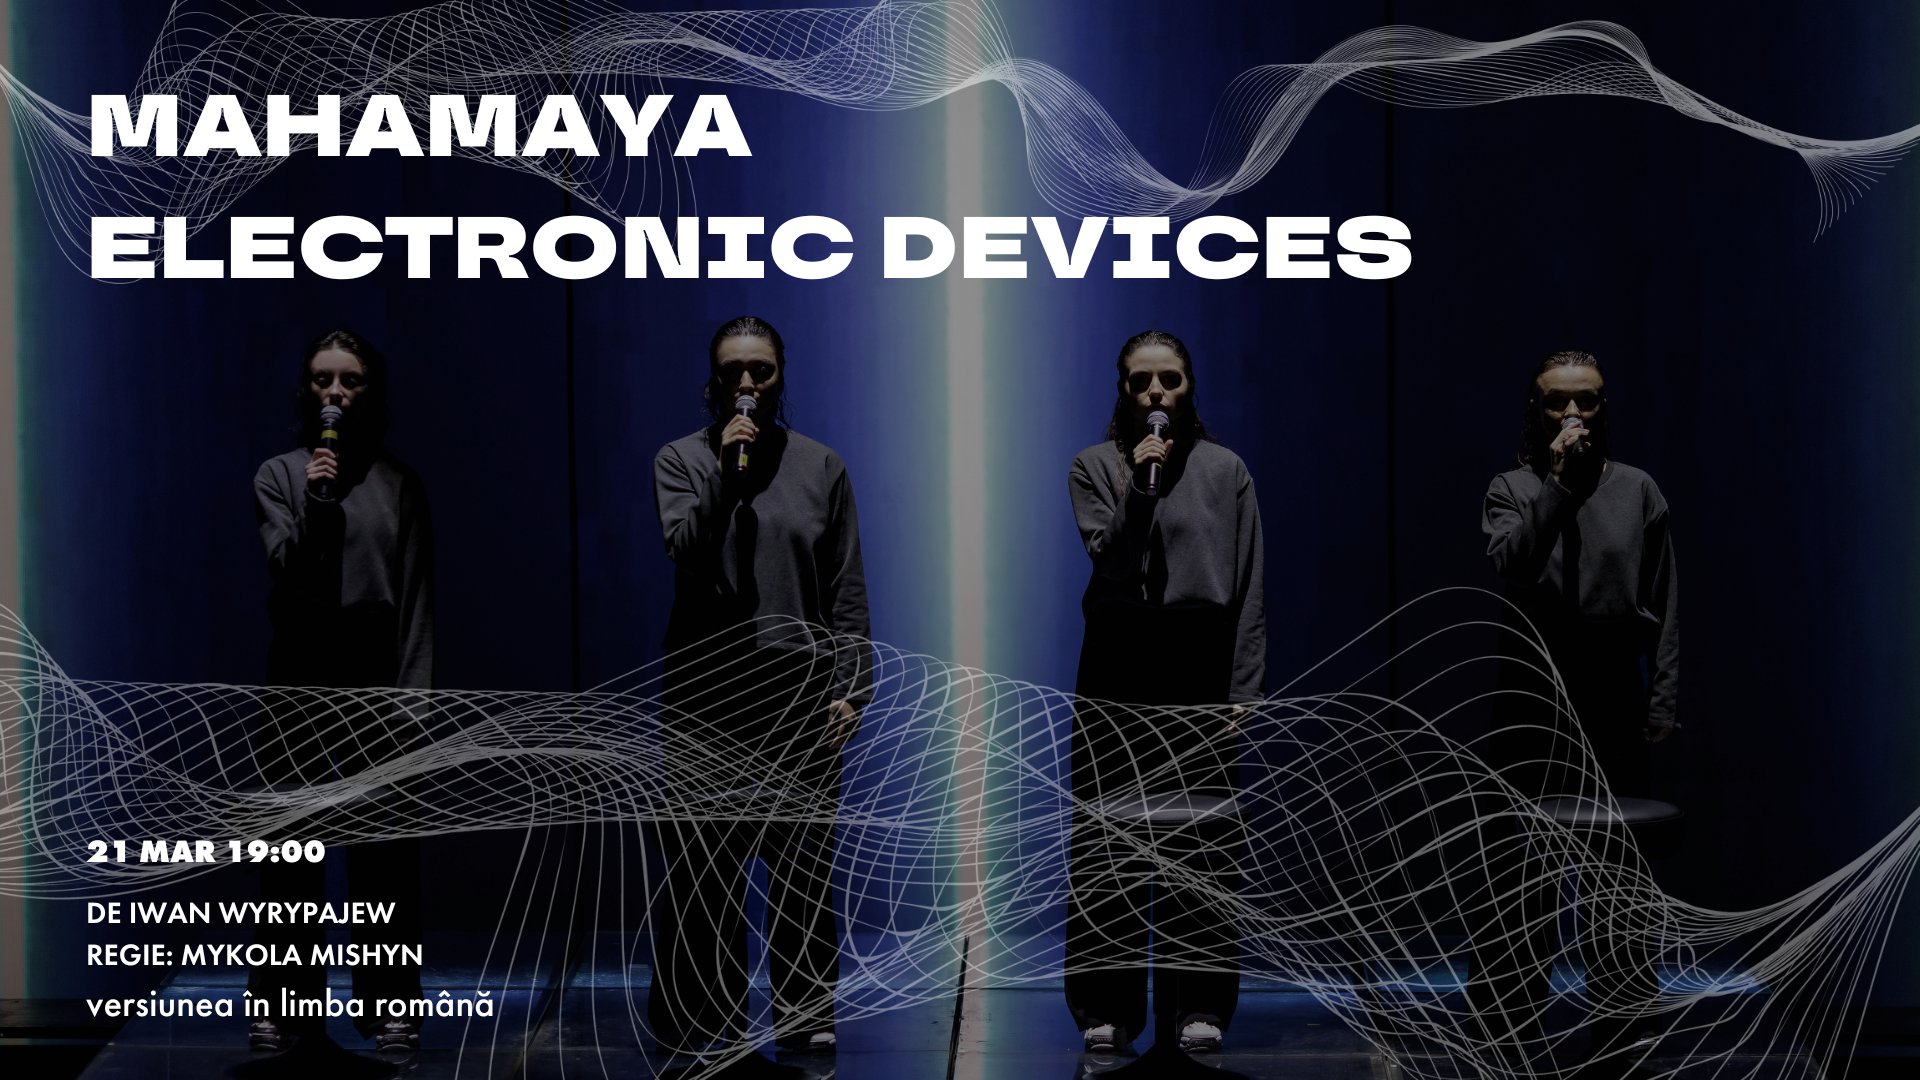  MAHAMAYA ELECTRONIC DEVICES / RO /